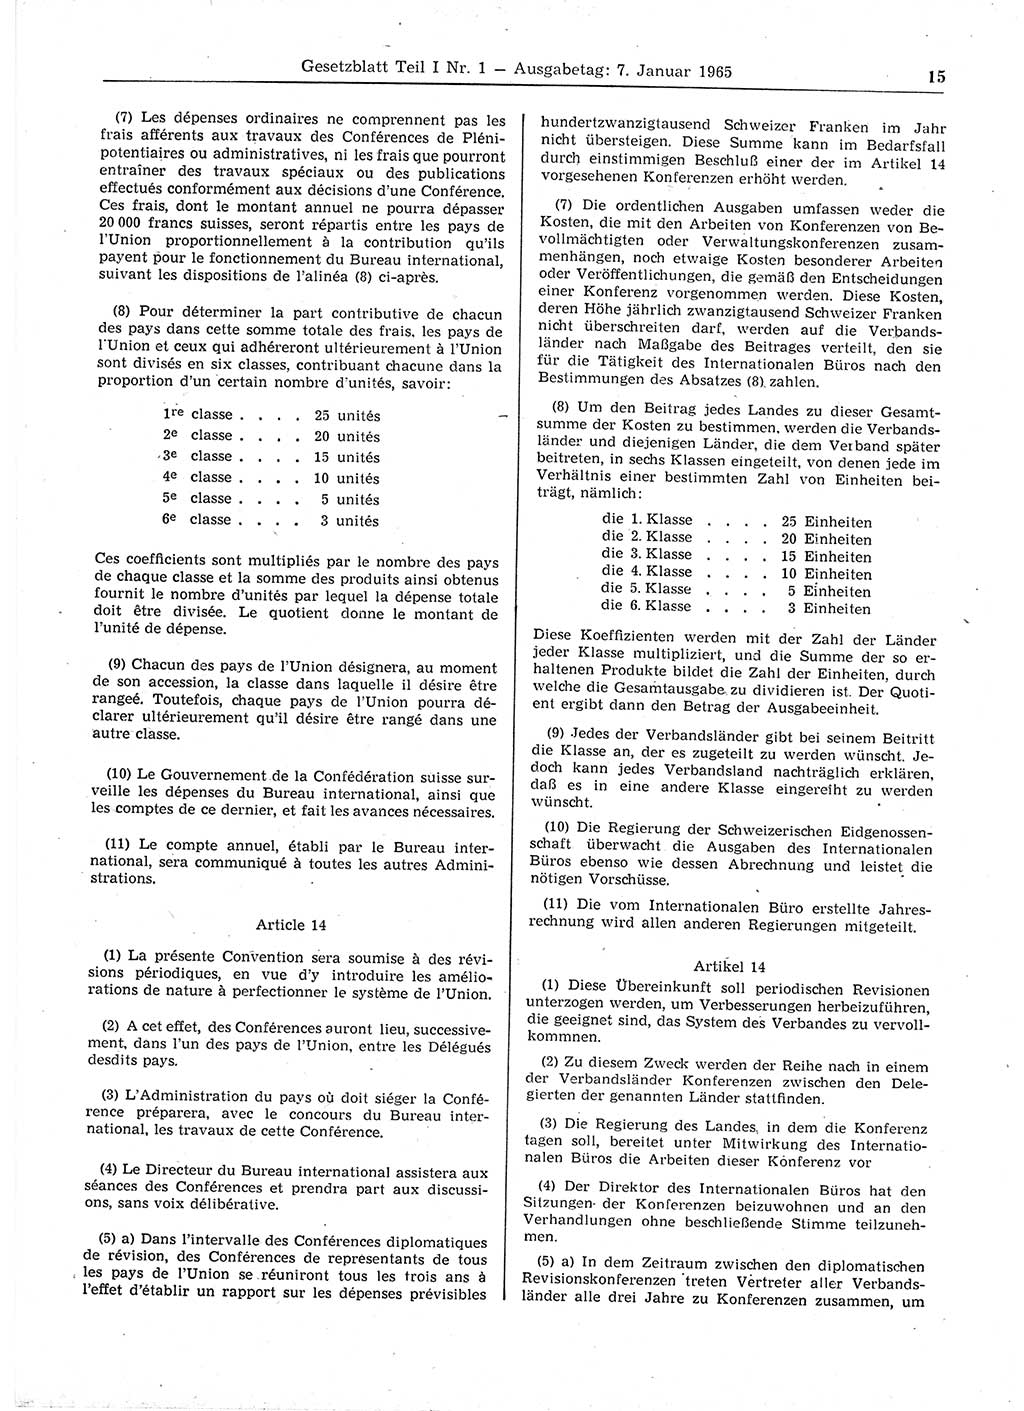 Gesetzblatt (GBl.) der Deutschen Demokratischen Republik (DDR) Teil Ⅰ 1965, Seite 15 (GBl. DDR Ⅰ 1965, S. 15)